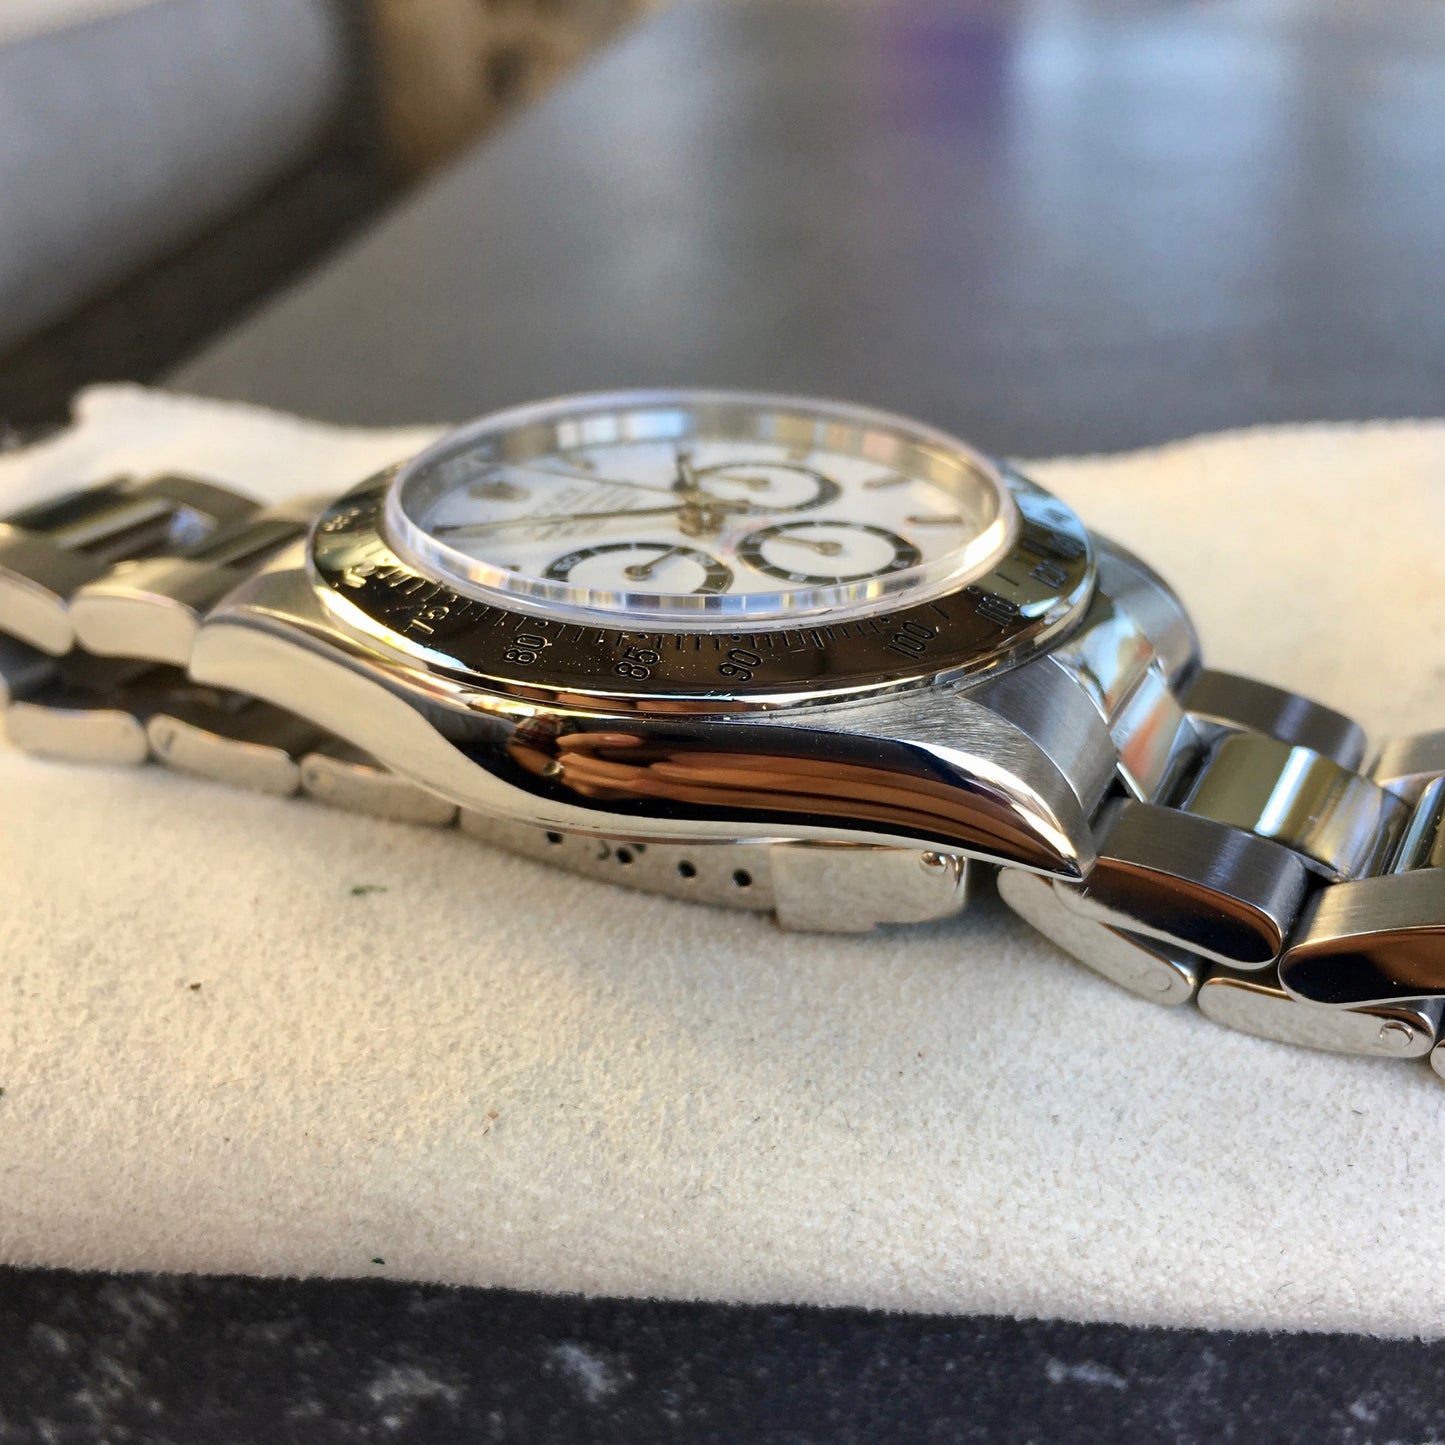 Rolex Daytona 16520 Zenith White Chronograph "U" Serial 1997 Steel Wristwatch - Hashtag Watch Company